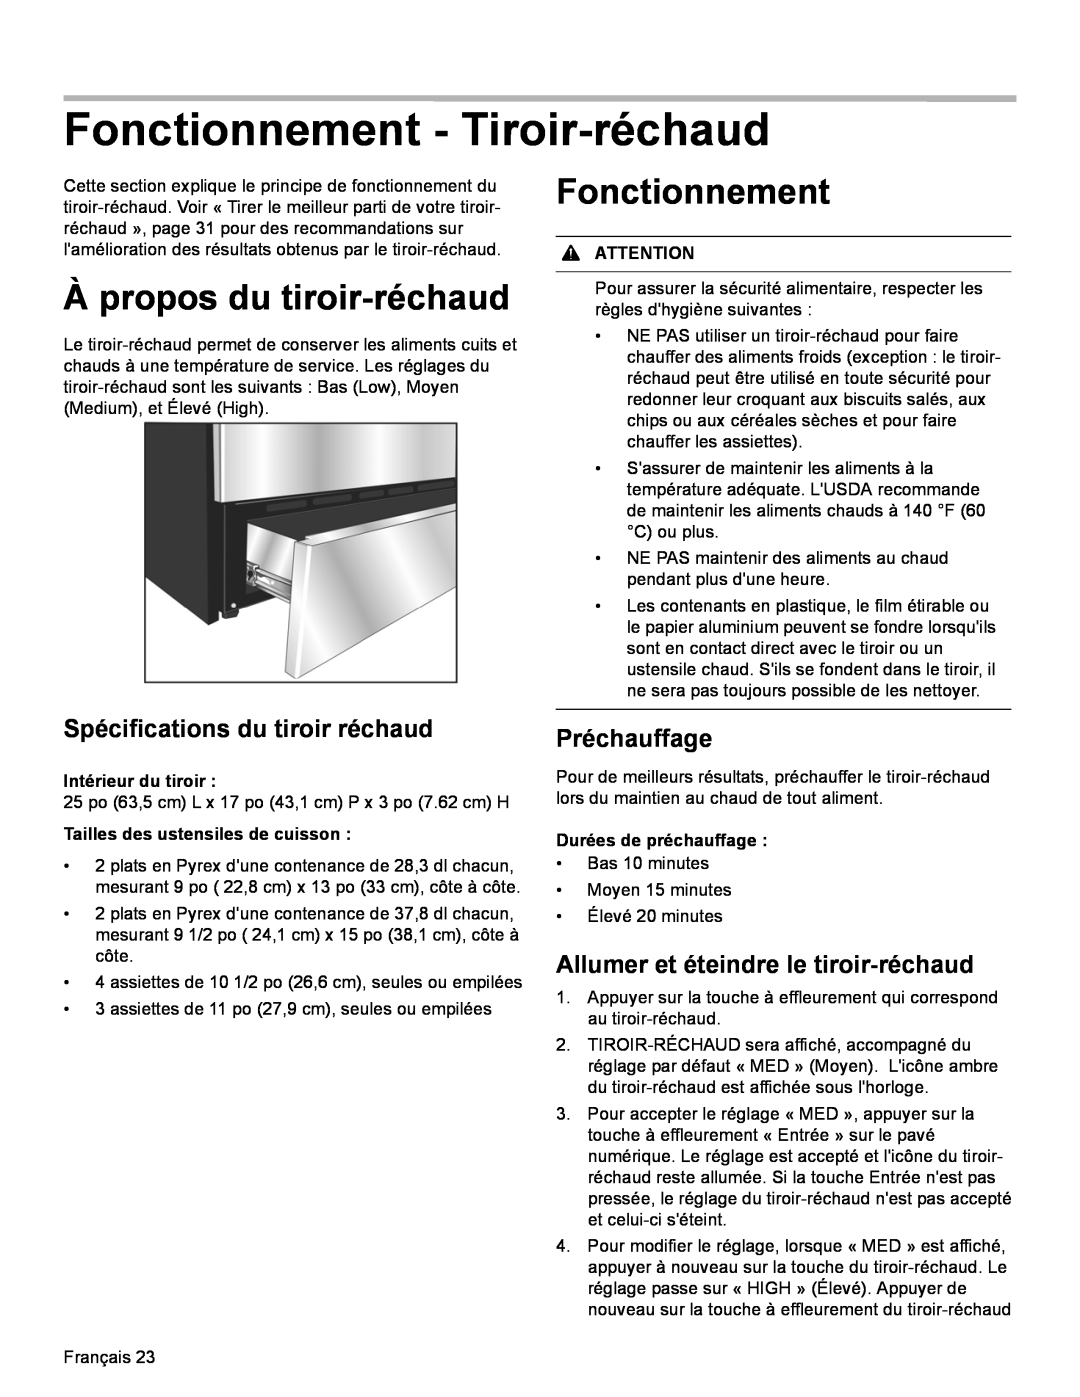 Bosch Appliances HDI8054U Fonctionnement - Tiroir-réchaud, À propos du tiroir-réchaud, Spécifications du tiroir réchaud 